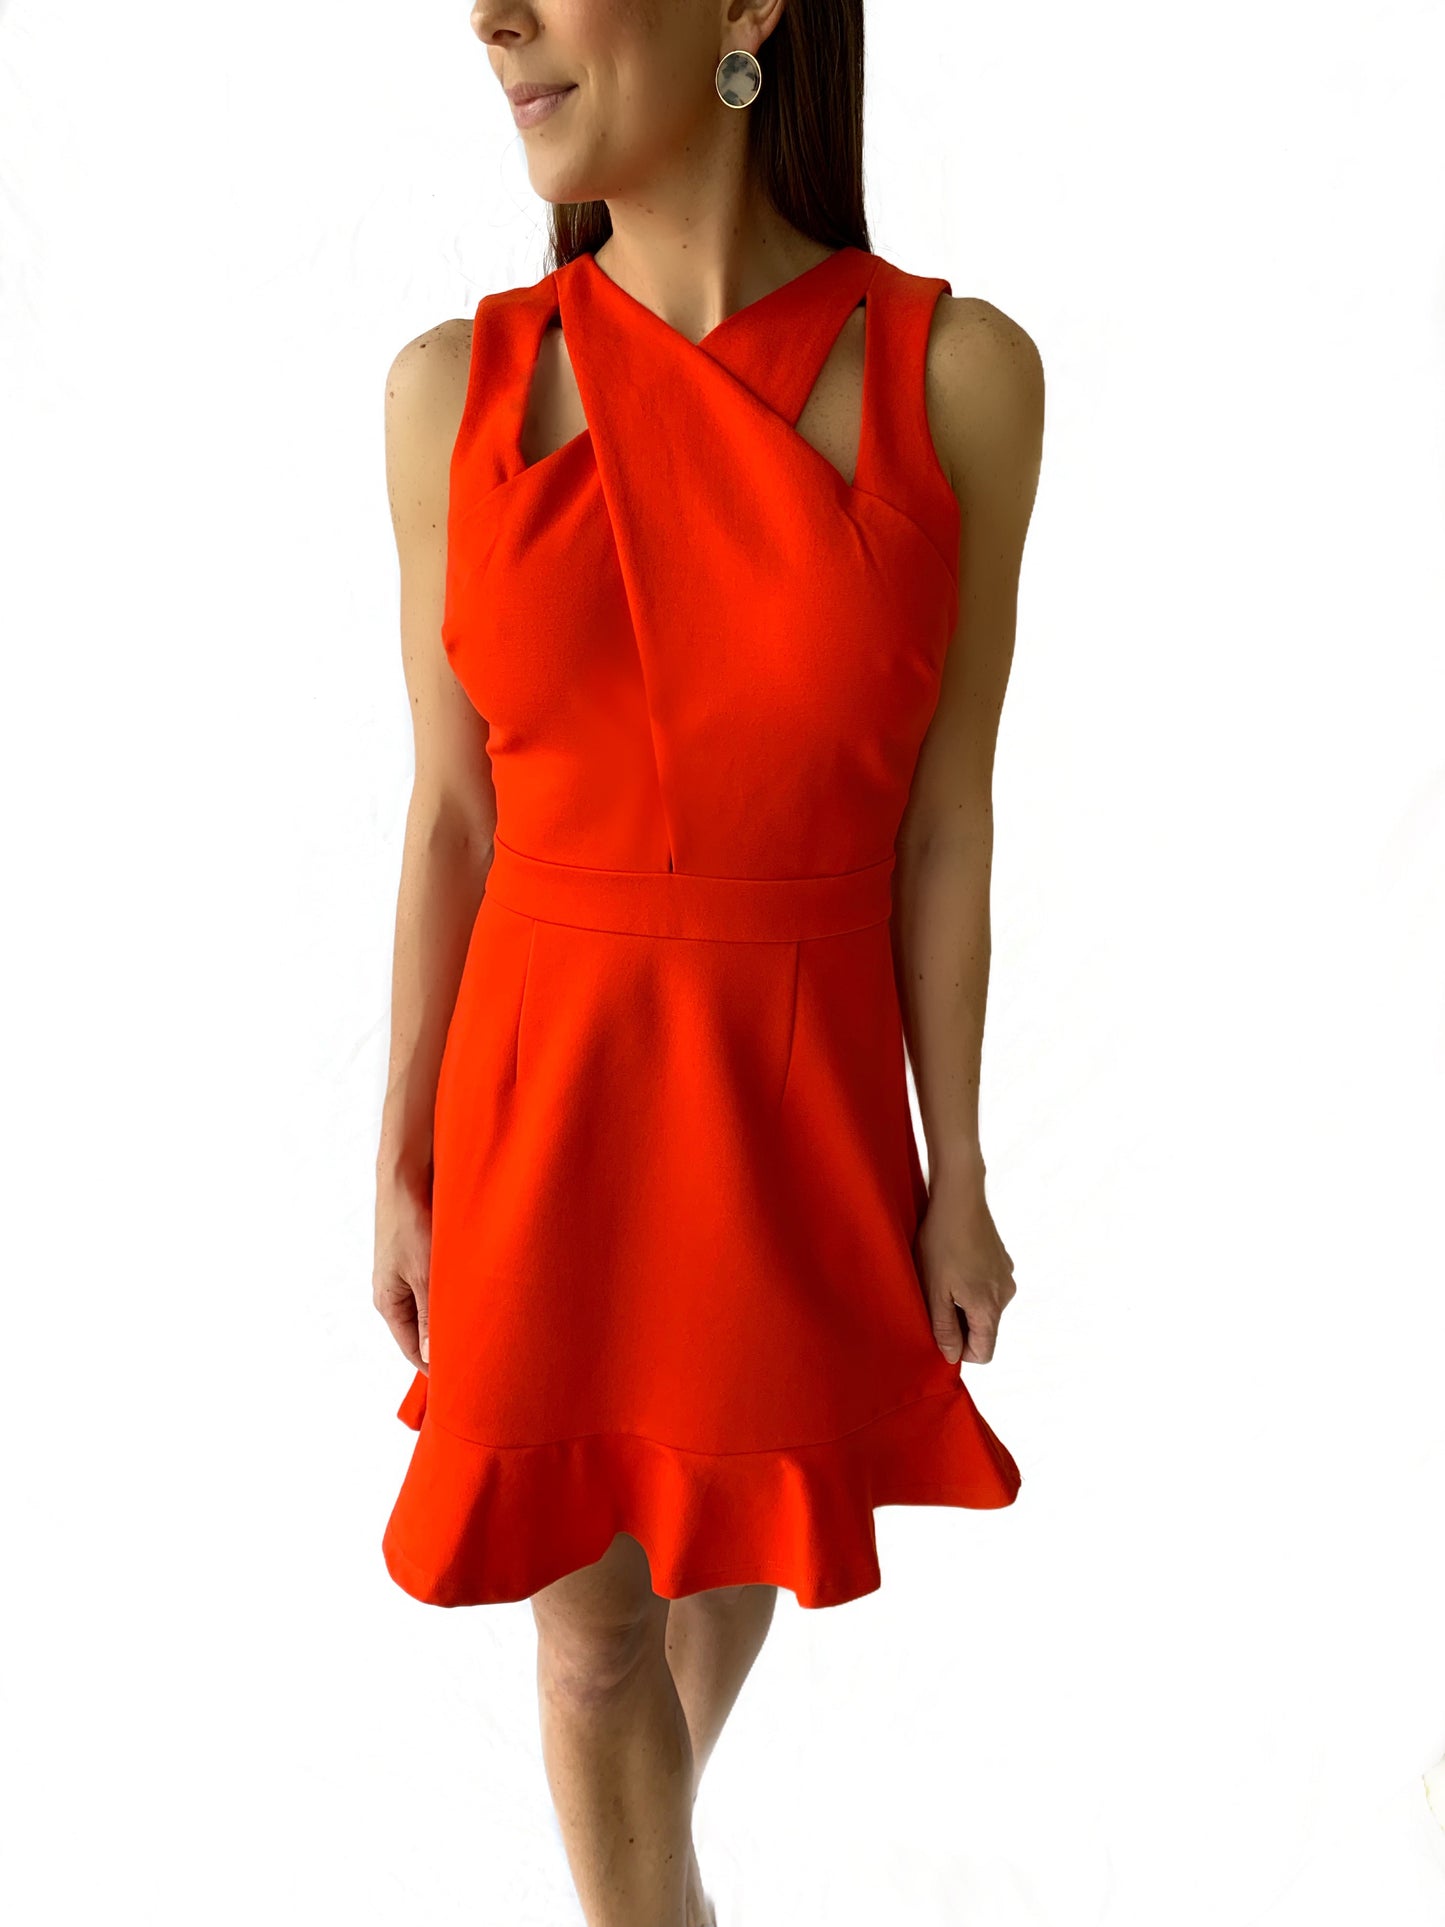 Tangerine Red Knit Cross Over Dress